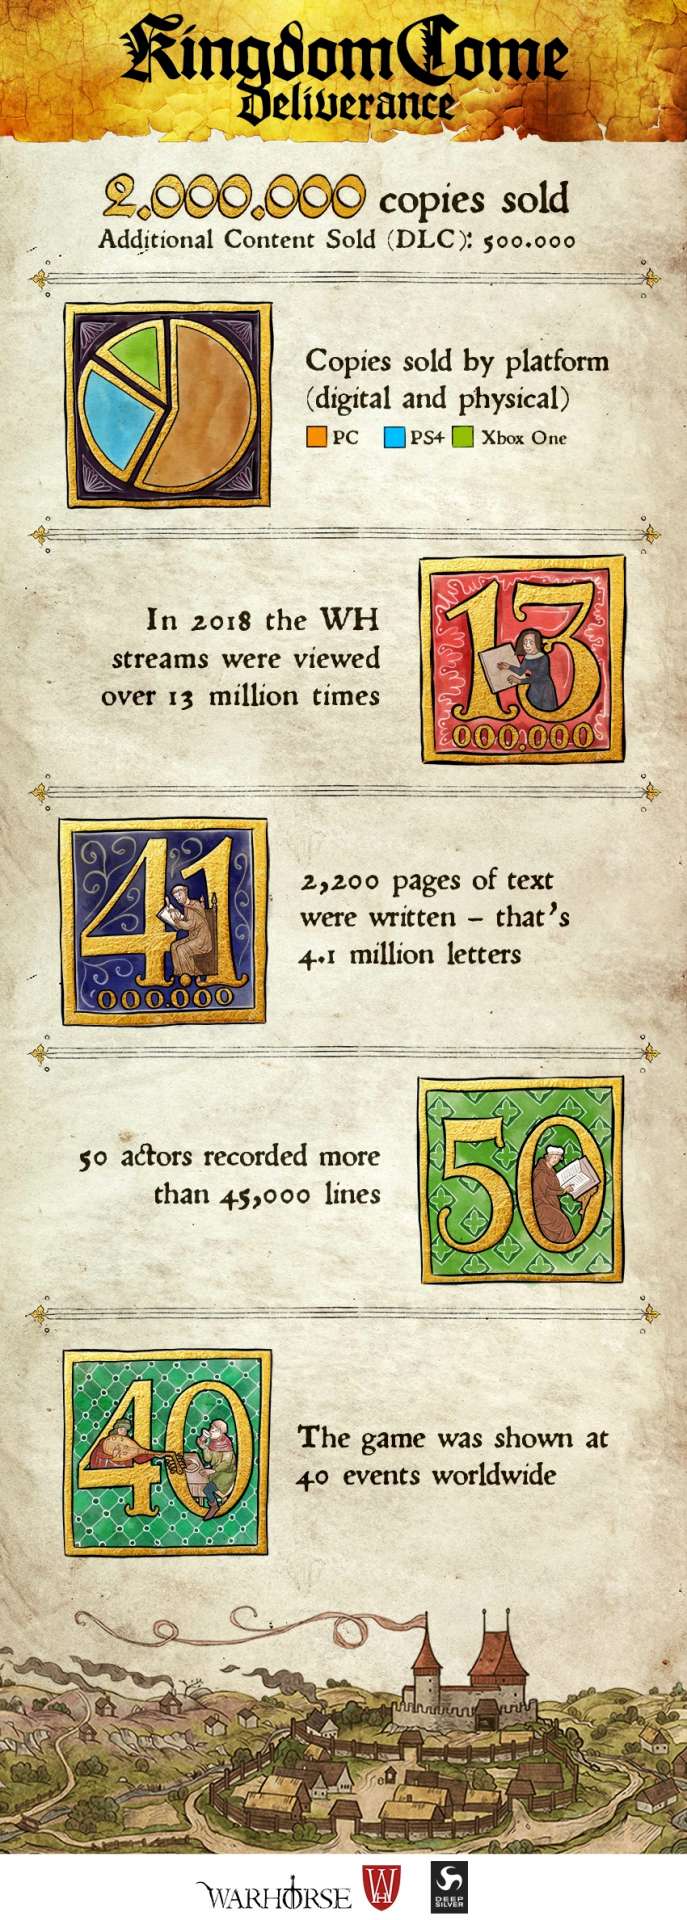 Инфографика Kingdom Come: Deliverance год спустя релиза